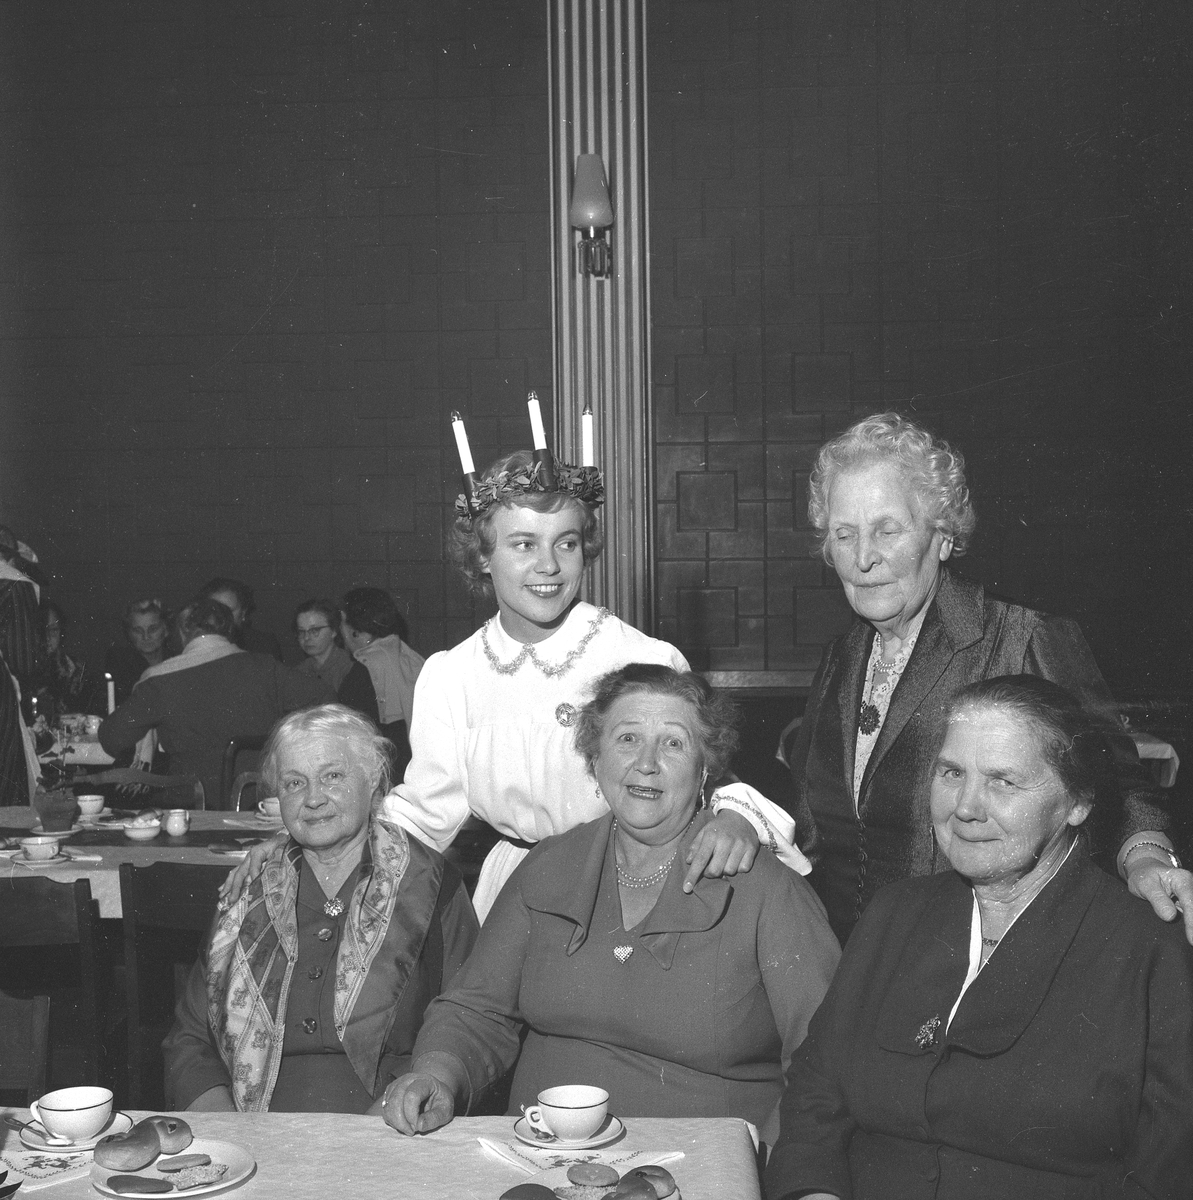 Husmödrar på Luciafest.
16 december 1958.